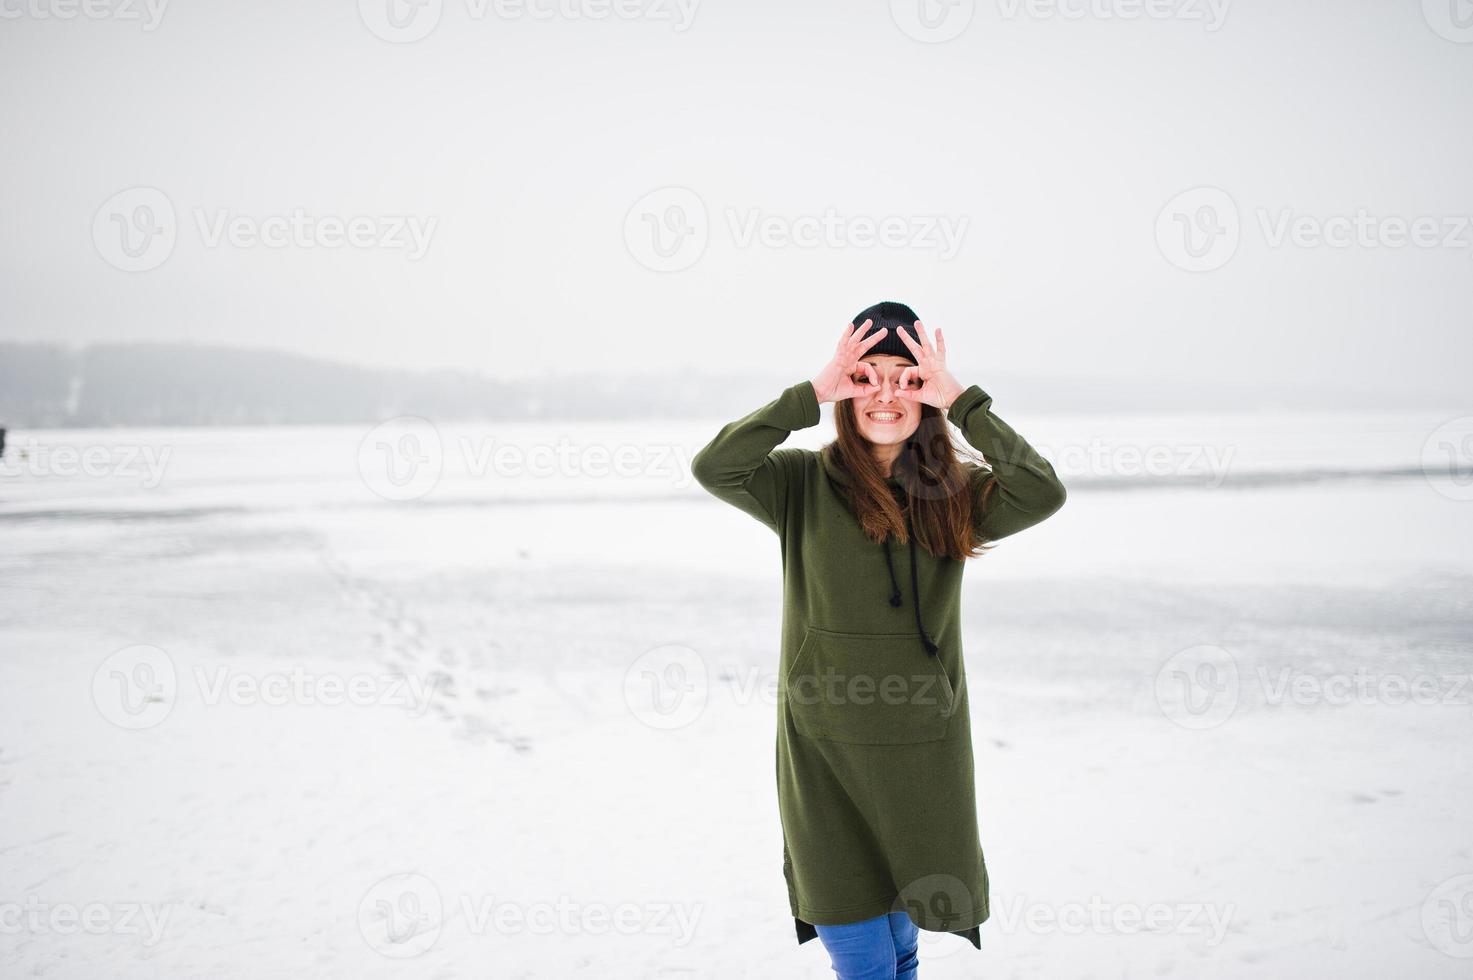 rolig flicka bär på lång grön tröja, jeans och svarta huvudbonader, vid frusen sjö i vinterdag. foto